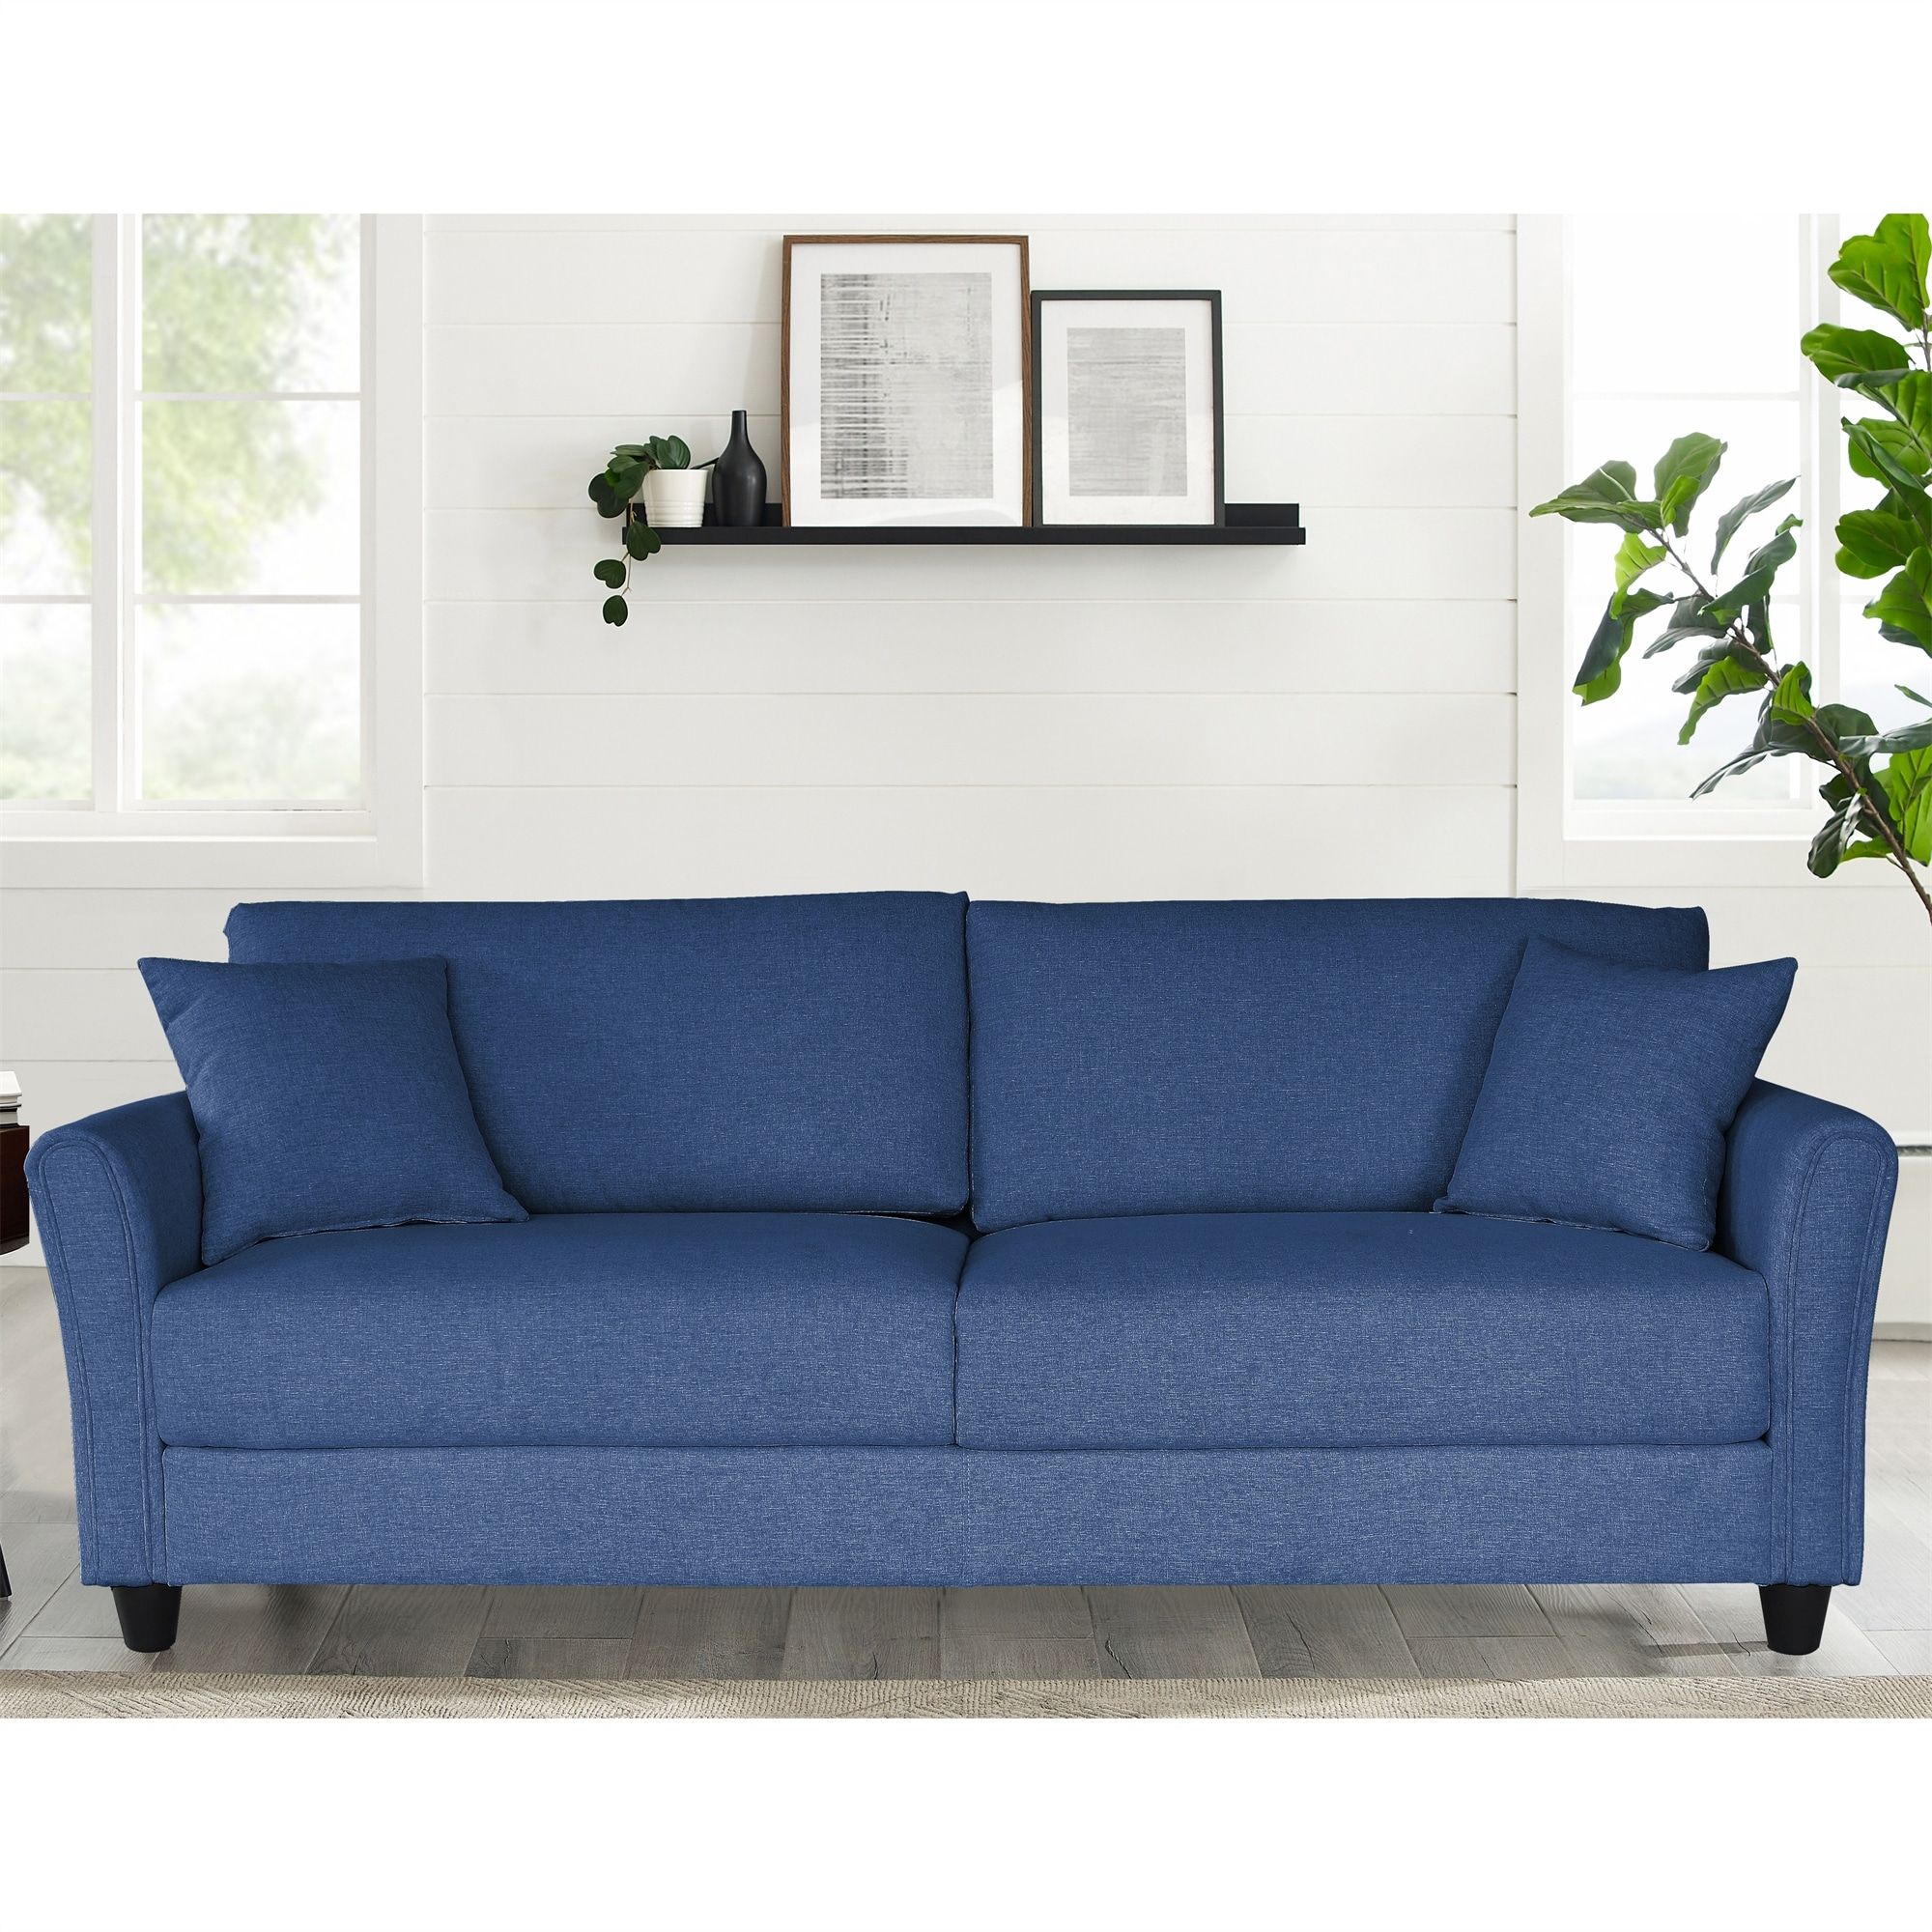 Blue Linen Three Seat Sofa – Bed Bath & Beyond – 36602793 Regarding Modern Blue Linen Sofas (View 4 of 15)